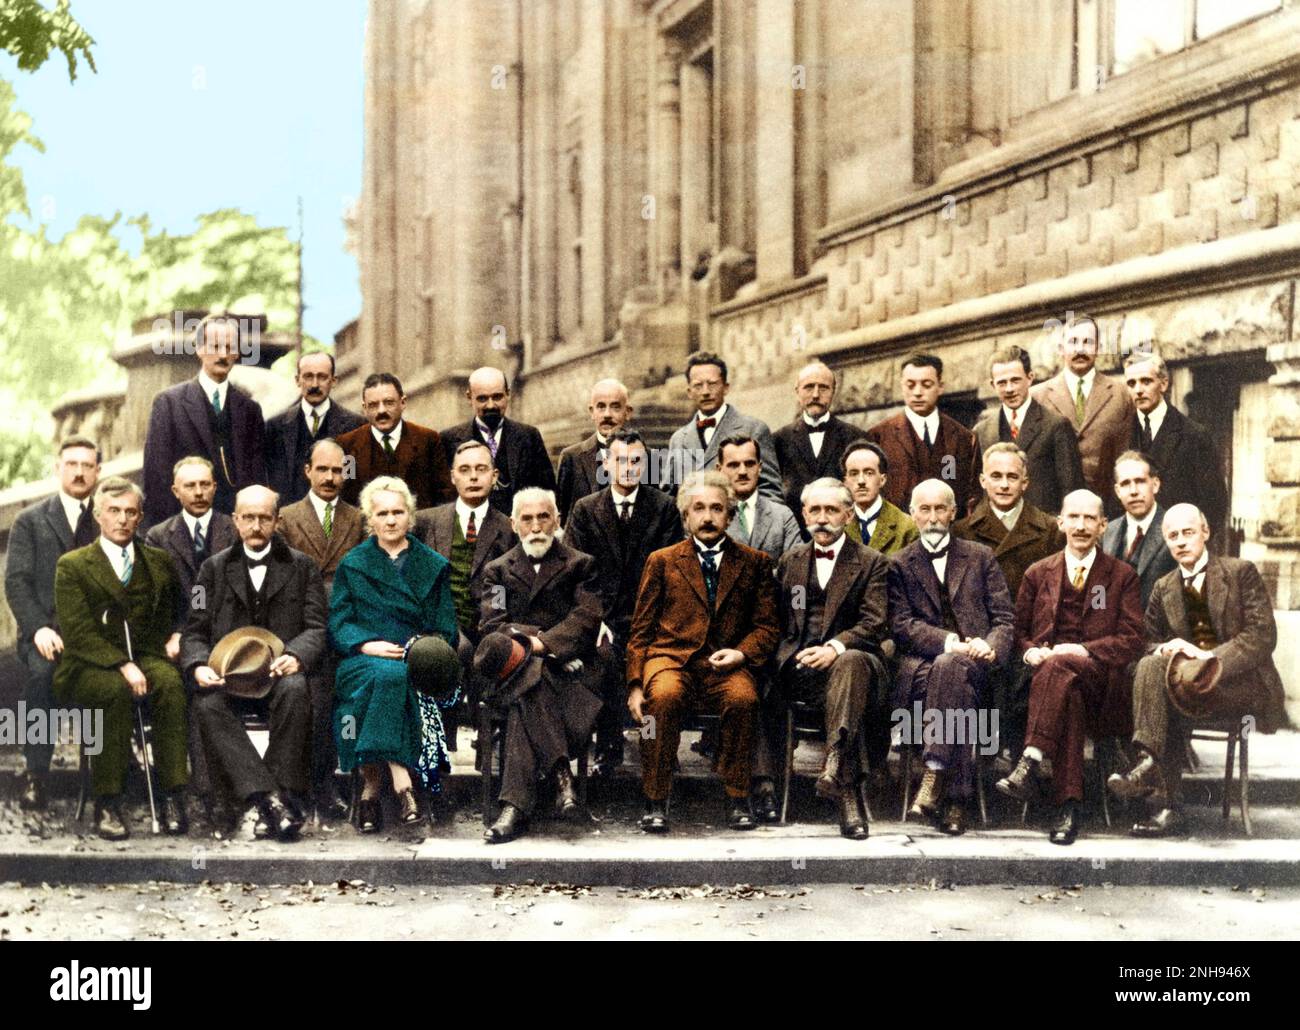 Die Internationalen Solvay-Institute für Physik und Chemie in Brüssel veranstalteten 1911 die erste Weltphysik-Konferenz, die alle drei Jahre stattfand. Die berühmteste Konferenz war die fünfte Konferenz über Elektronen und Photonen im Jahr 1927. Zu den Teilnehmern zählten Marie Curie, Albert Einstein, Niels Bohr und Werner Heisenberg, um nur einige zu nennen. Von den 29 Teilnehmern waren 17 aktuelle oder zukünftige Nobelpreisträger. Gefärbt. Stockfoto